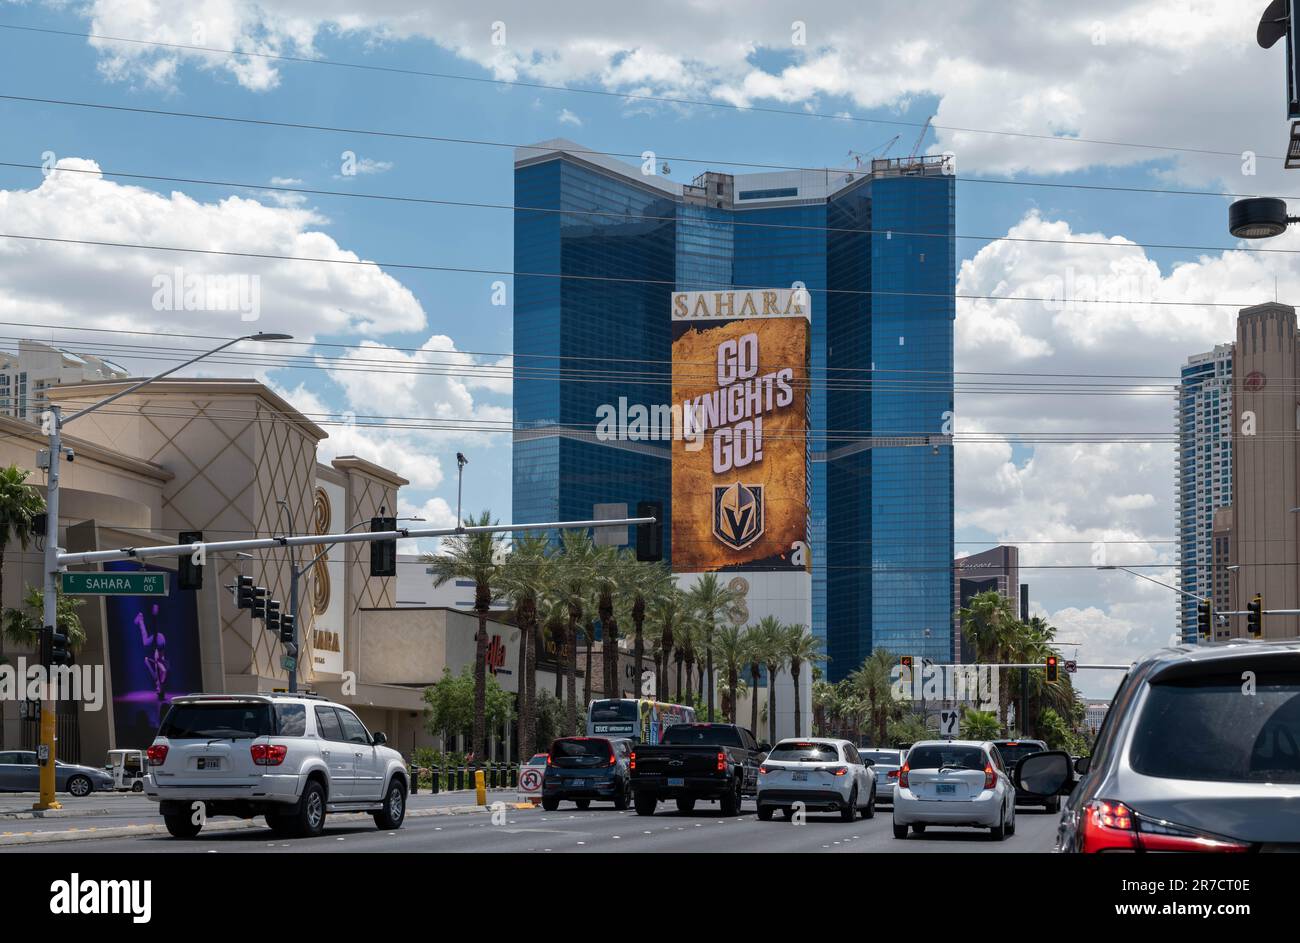 L'équipe de hockey professionnel des chevaliers de Las Vegas remporte la coupe Stanley en publicité Sahara Hotel, Las Vegas, Nevada Banque D'Images